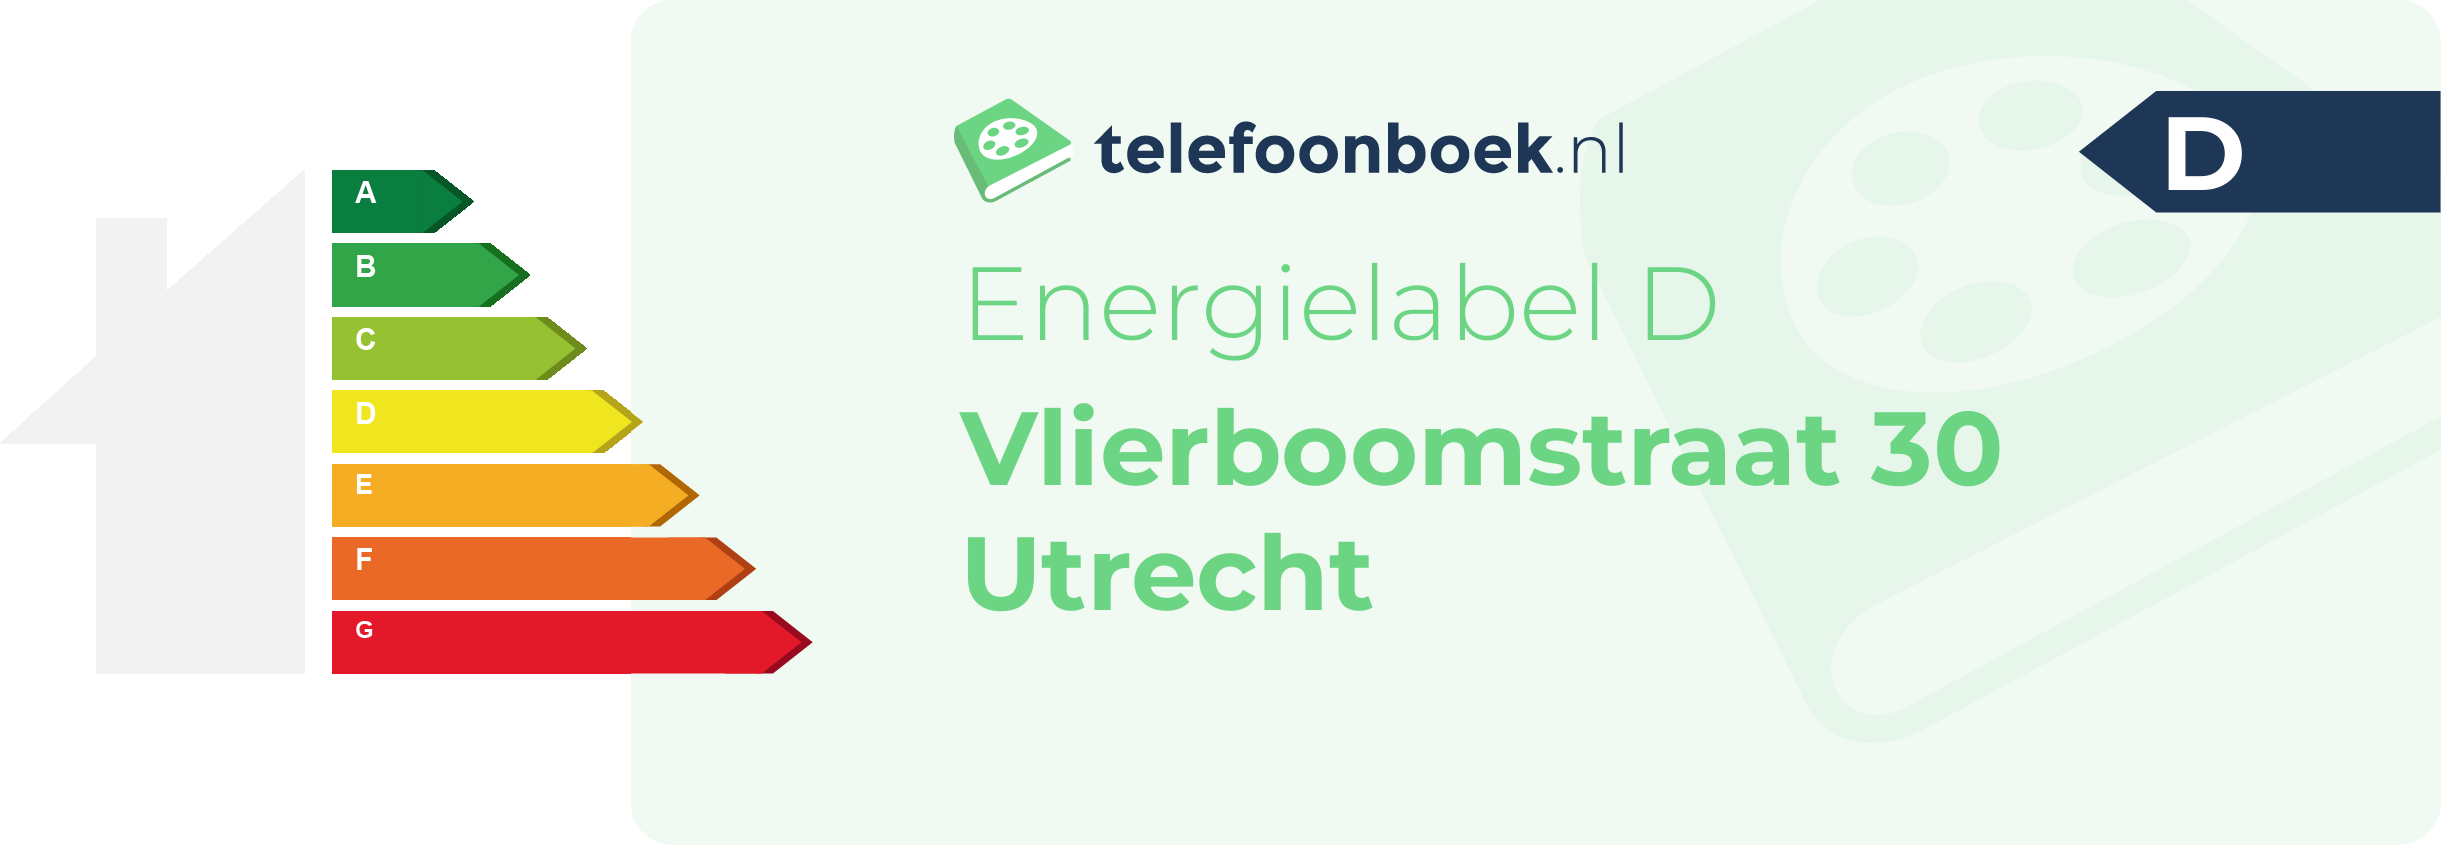 Energielabel Vlierboomstraat 30 Utrecht